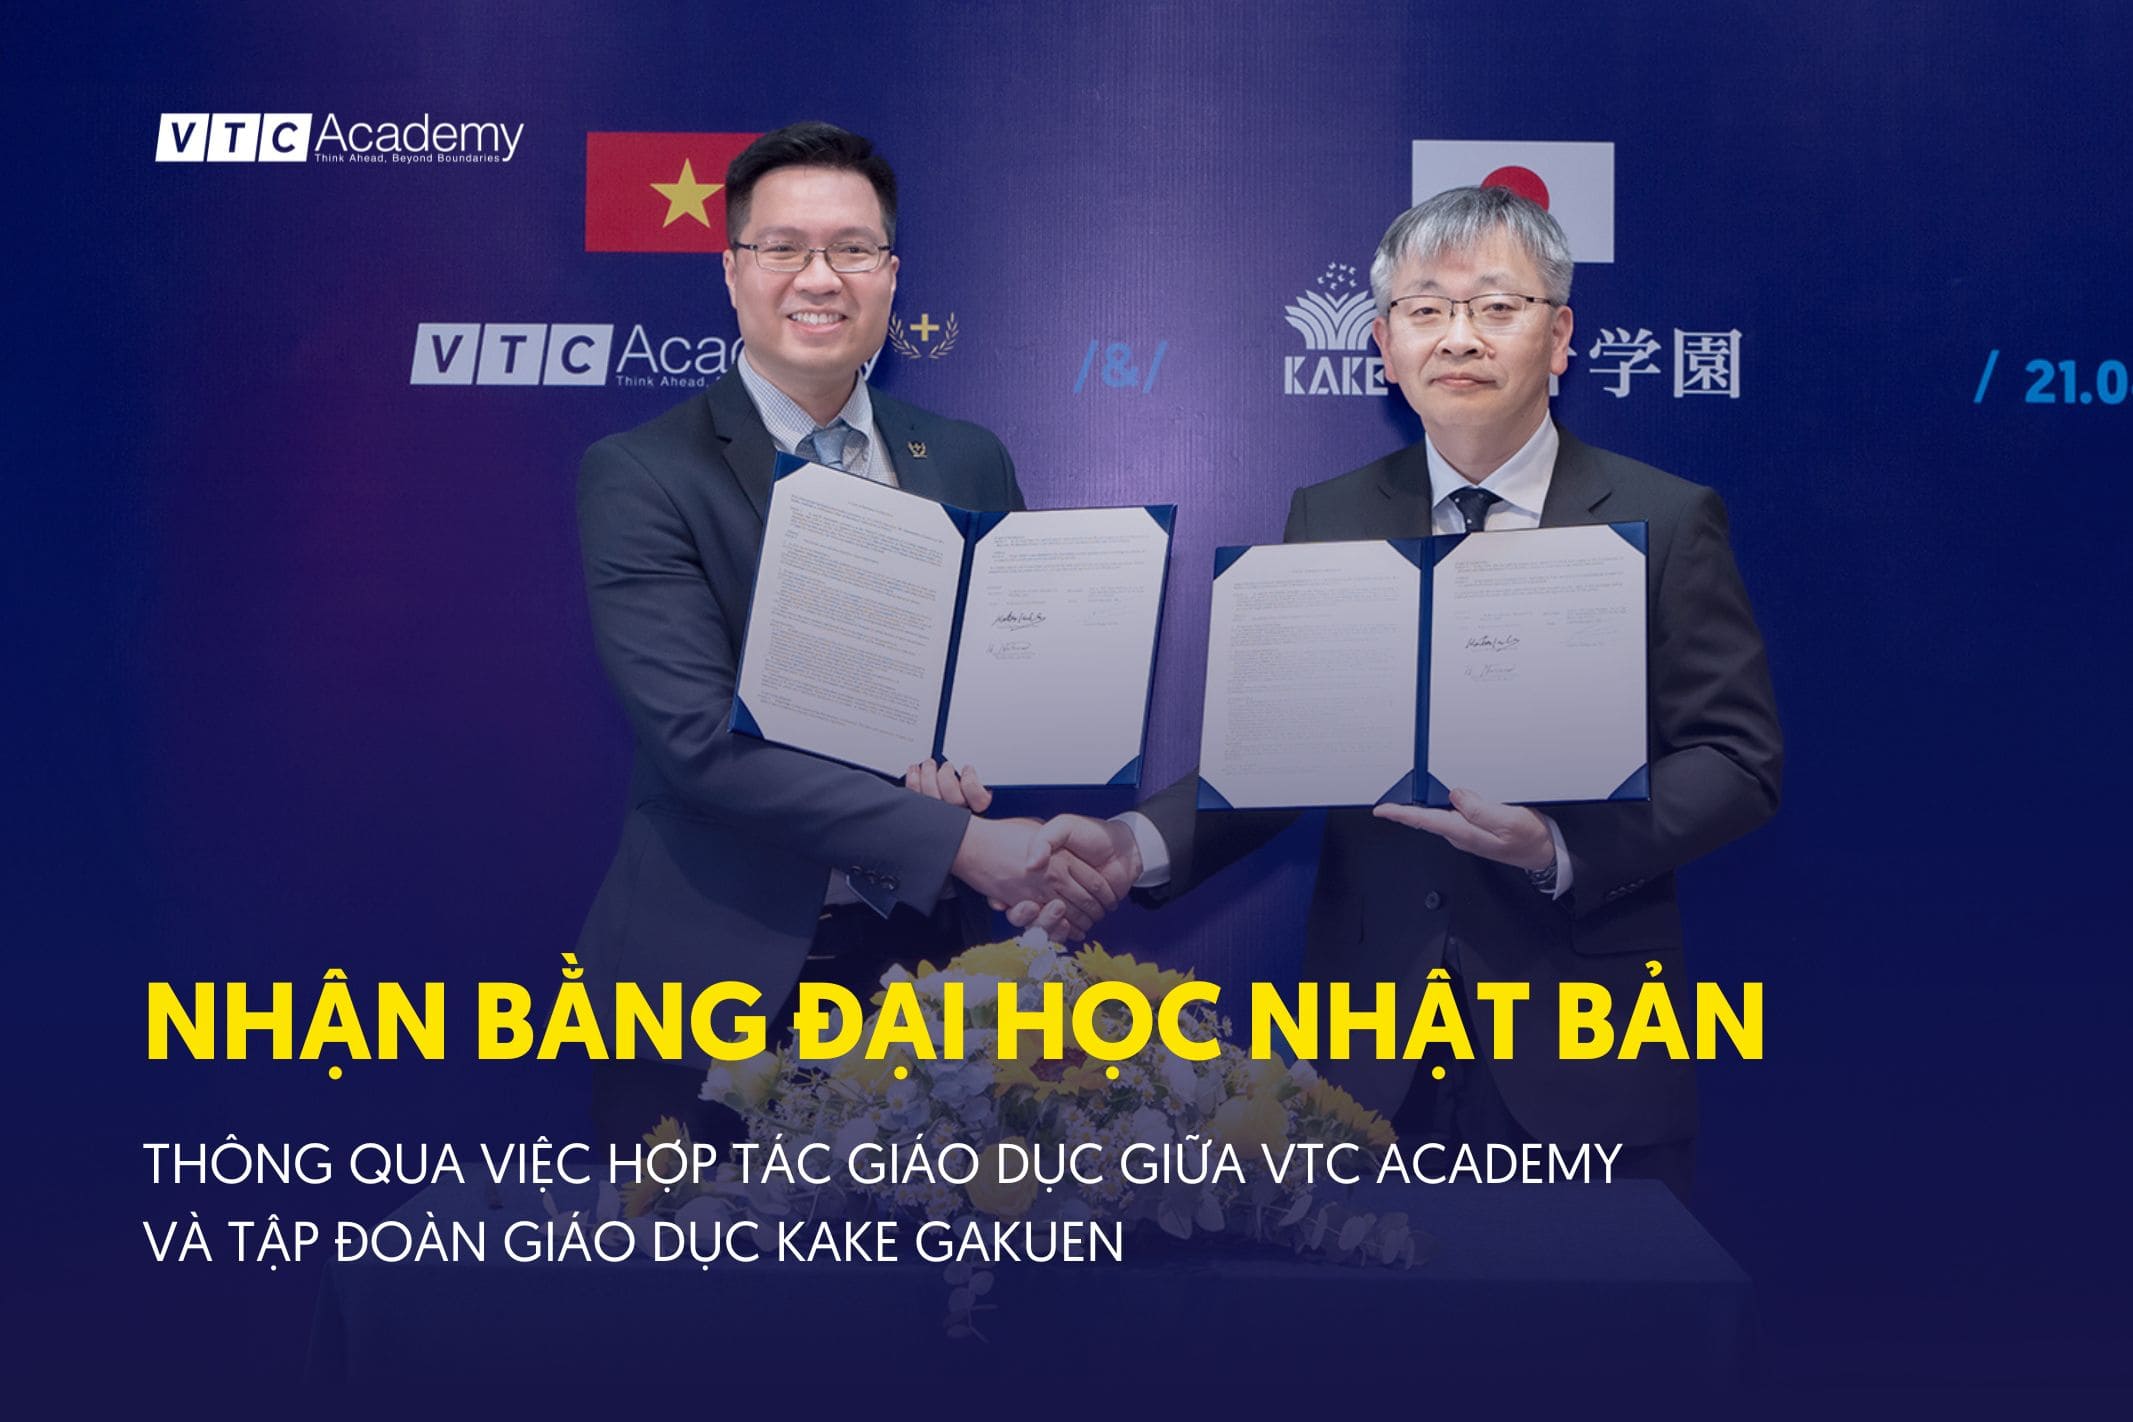 Cơ hội nhận bằng Đại học Nhật Bản, thông qua việc hợp tác giáo dục giữa VTC Academy và Tập đoàn giáo dục Kake Gakuen